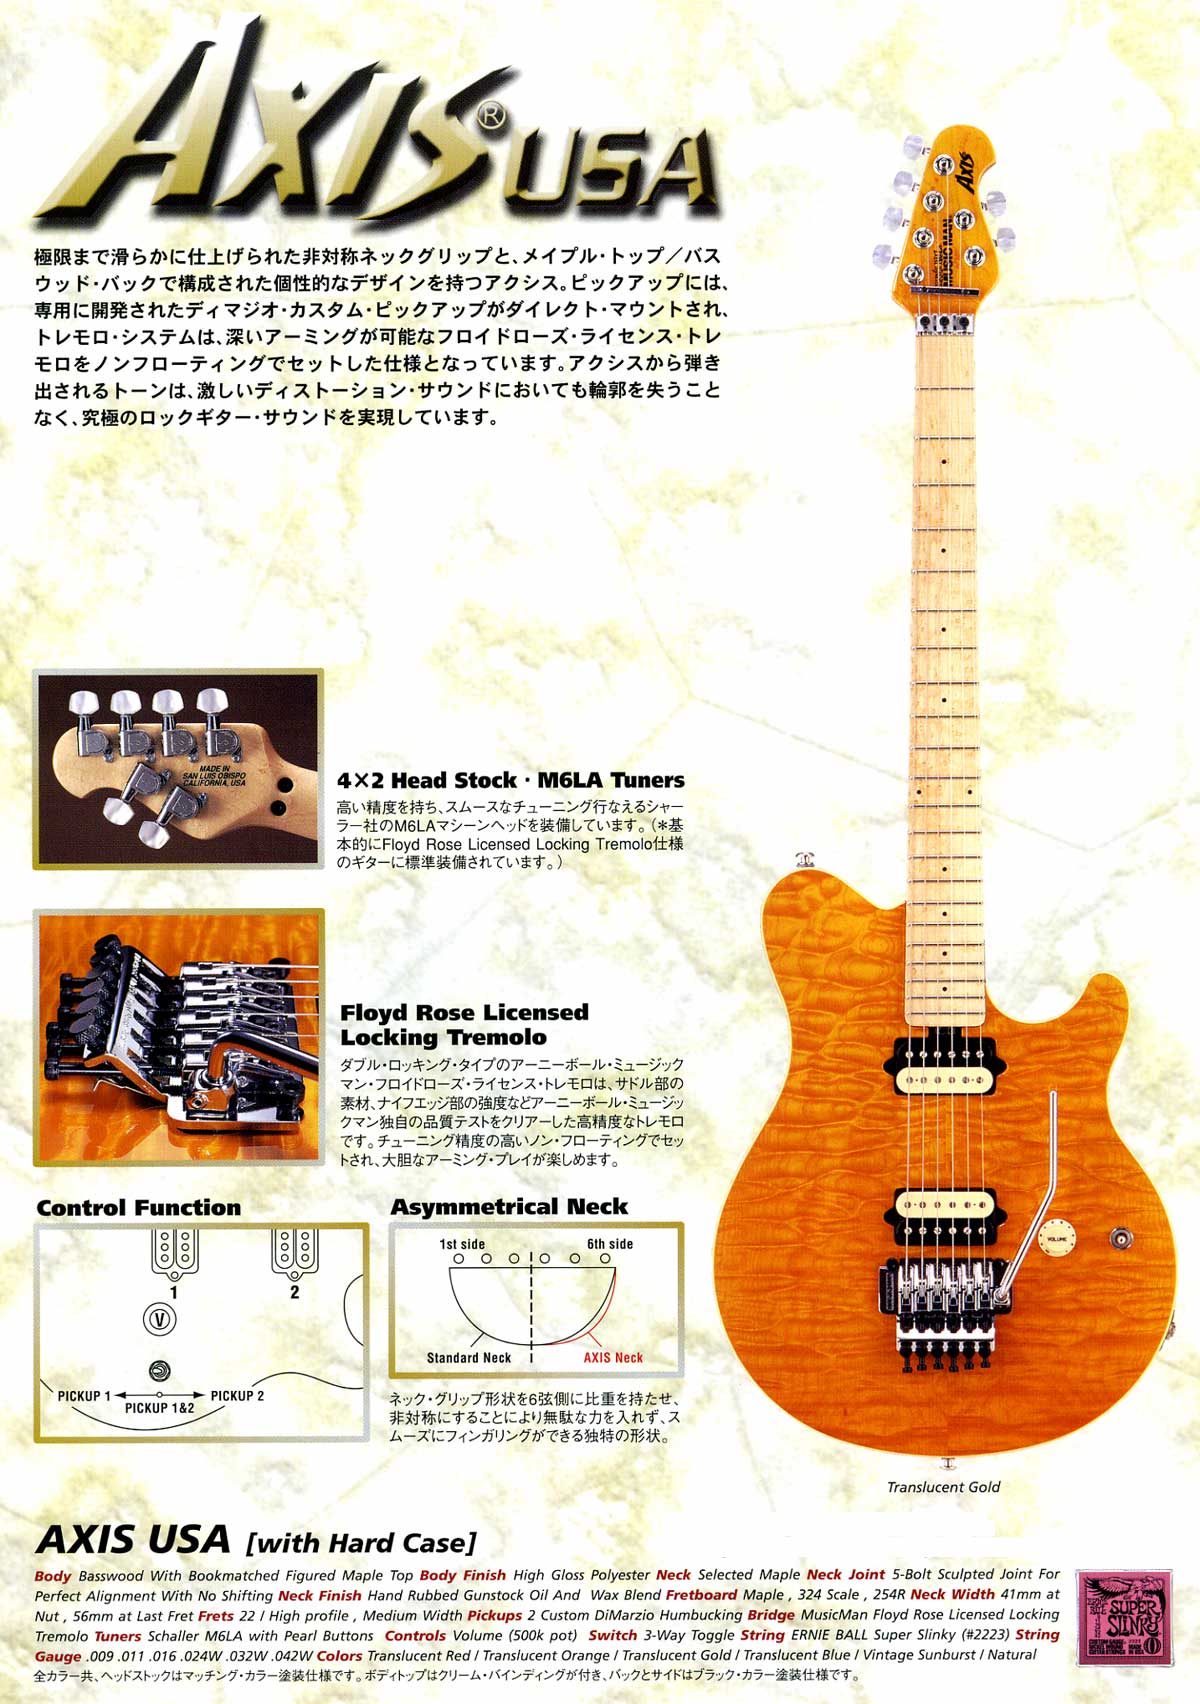 ミュージックマン・エレクトリックギター（MUSIC MAN Guitars）の販売 